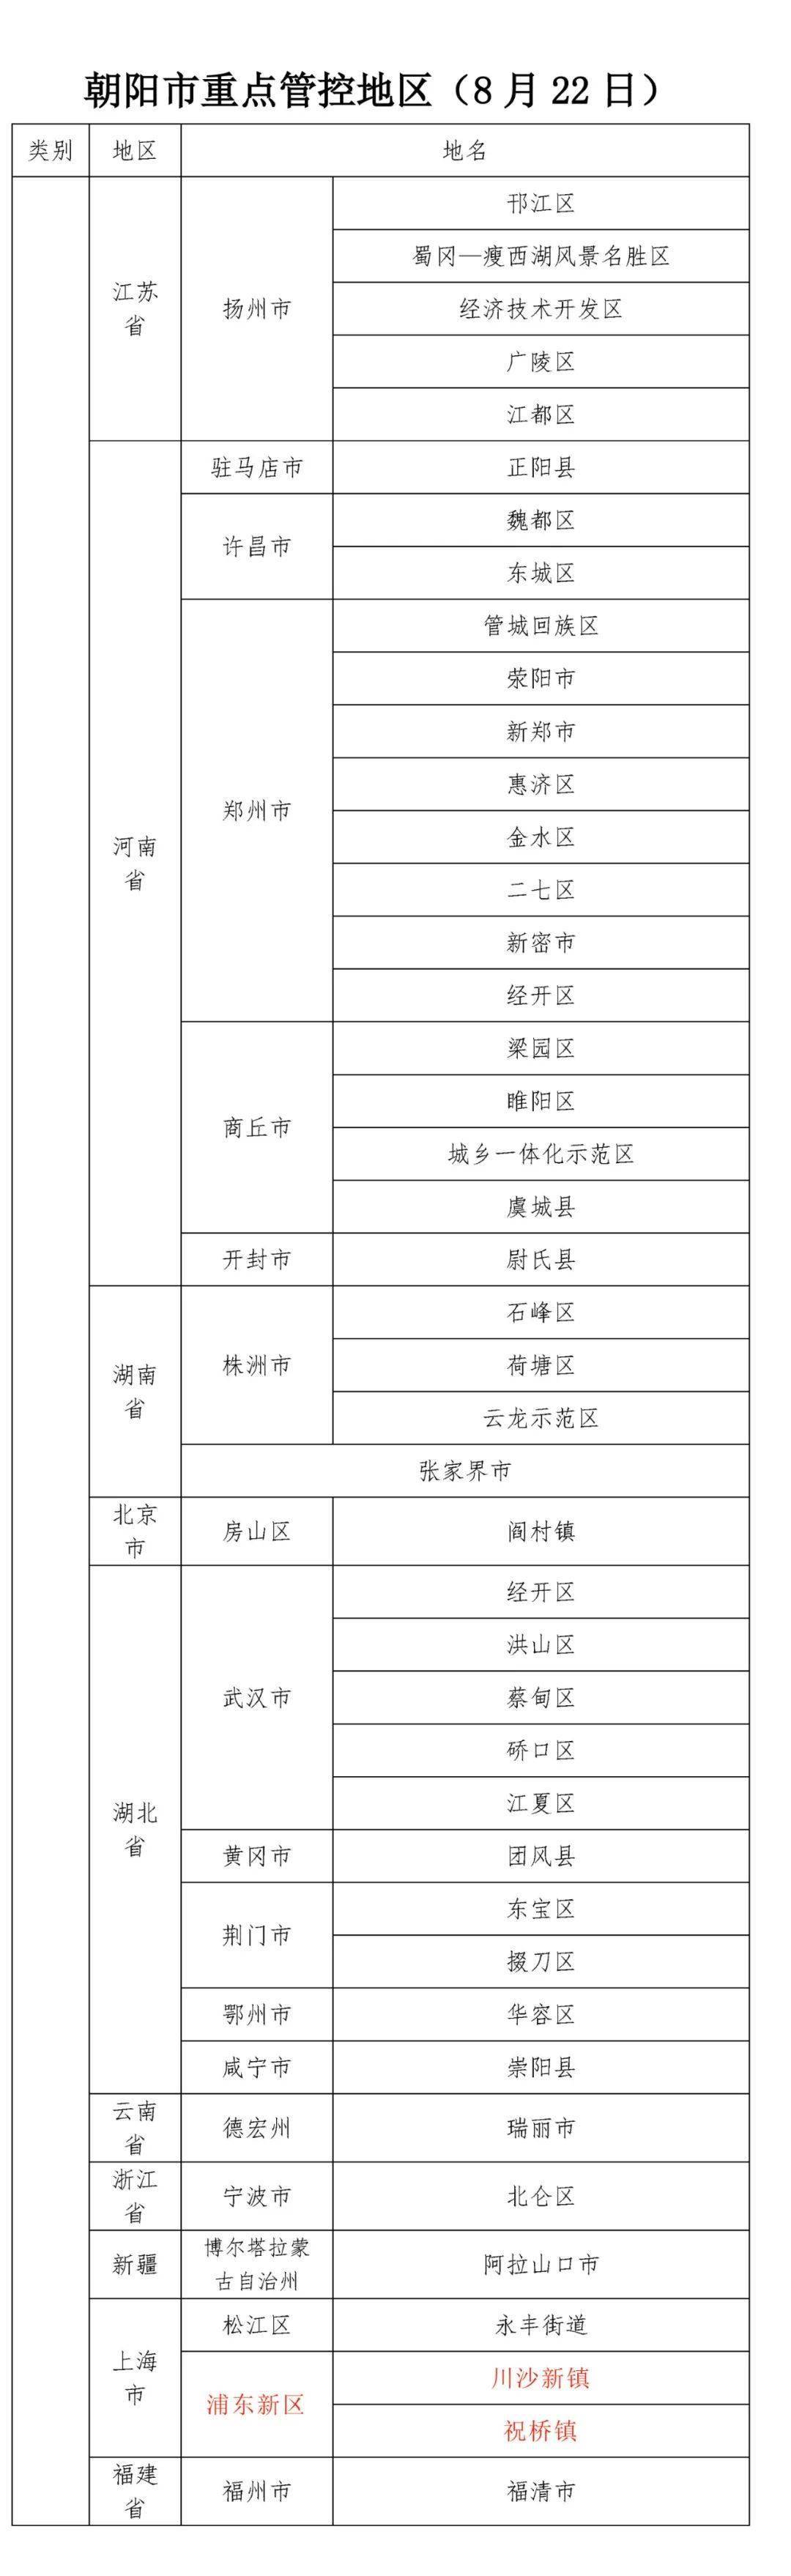 广州核酸大排查已发现阳性16例_南京黄码人员一周三次核酸_南京出现1例核酸阳性人员